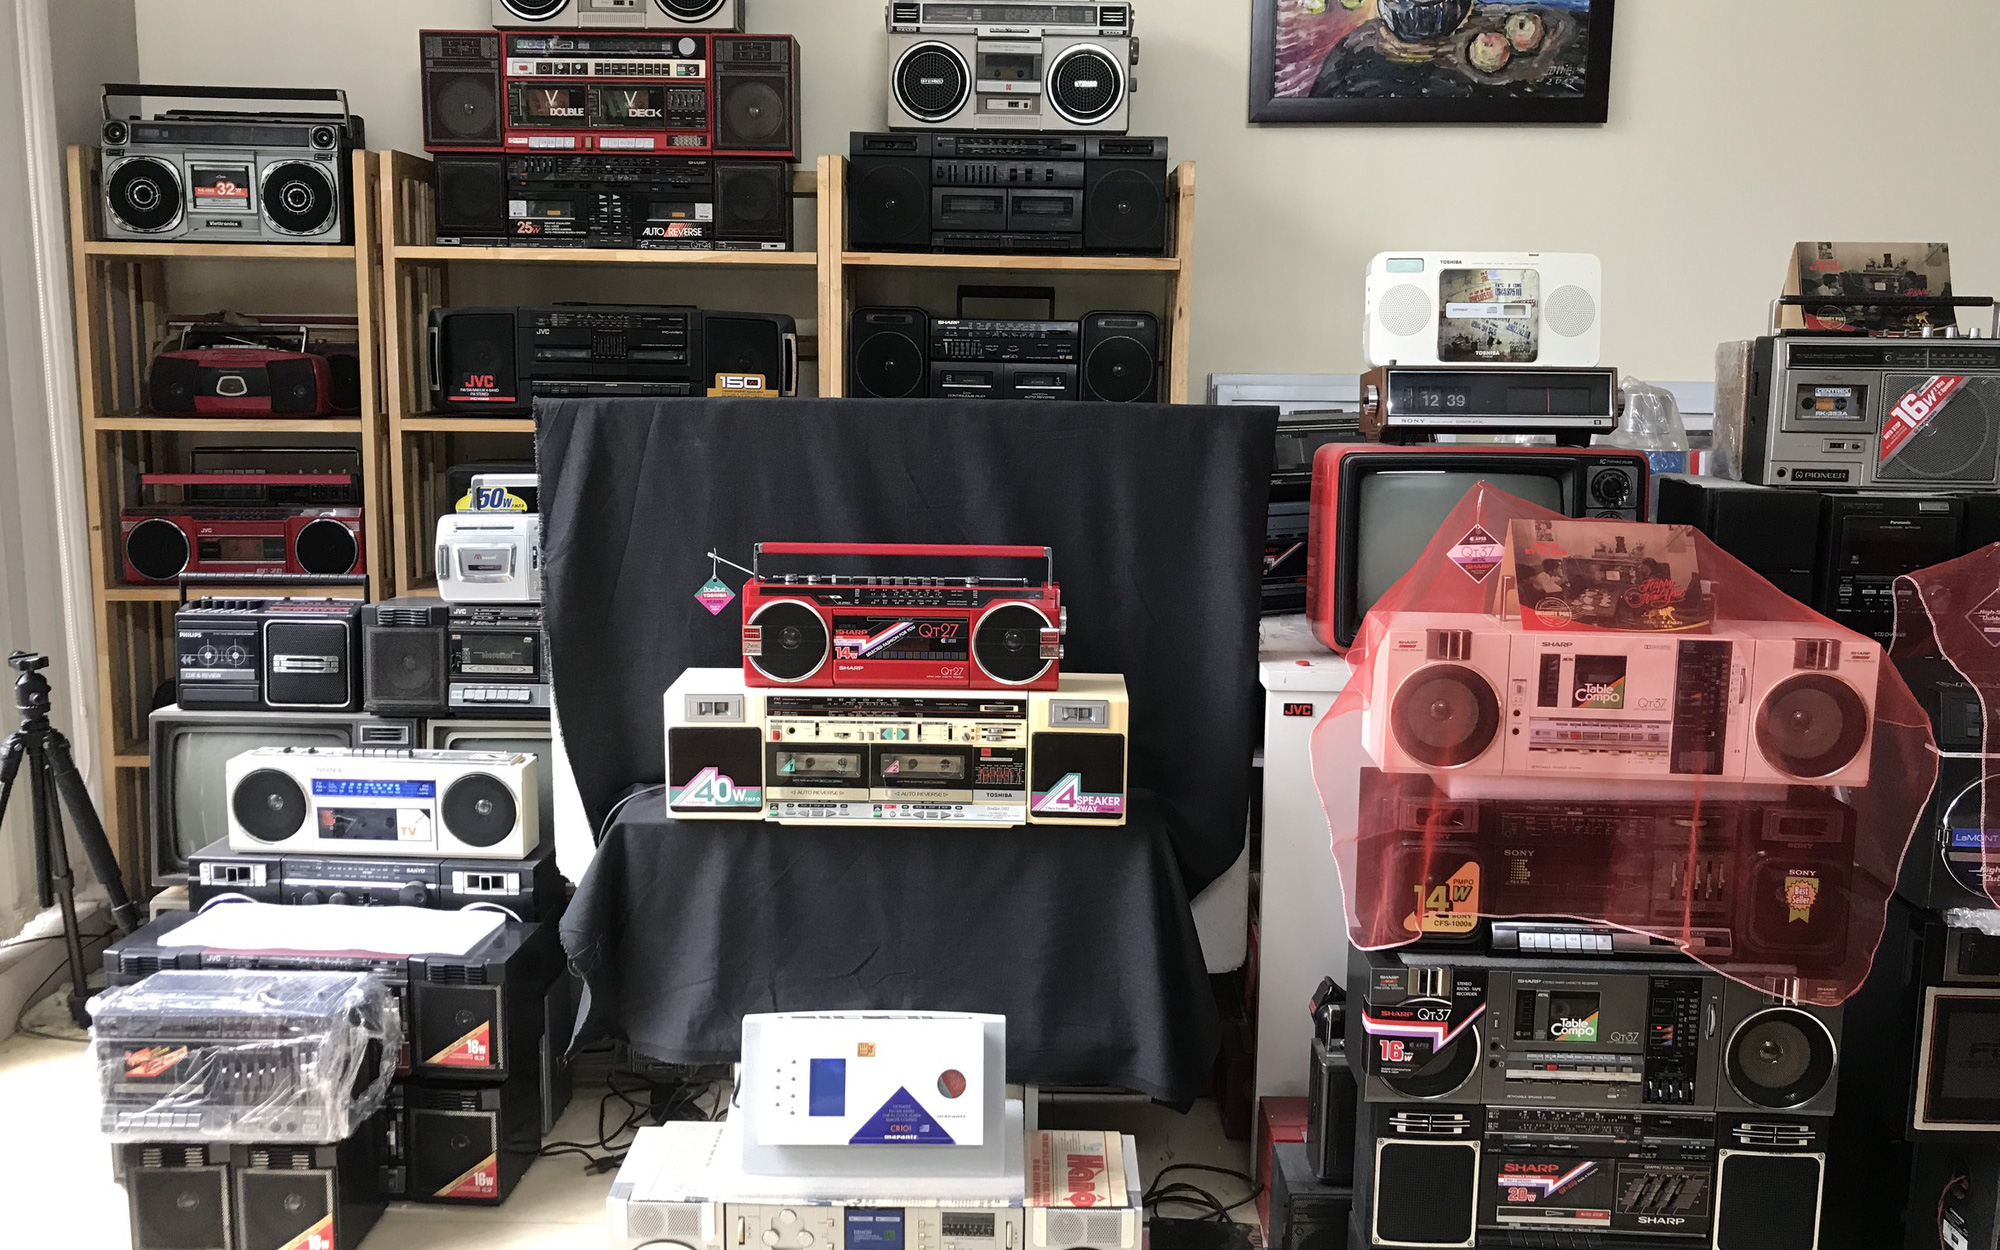 Choáng ngợp với dàn radio cassette hơn 1.000 chiếc “độc nhất vô nhị” ở Hà Nội